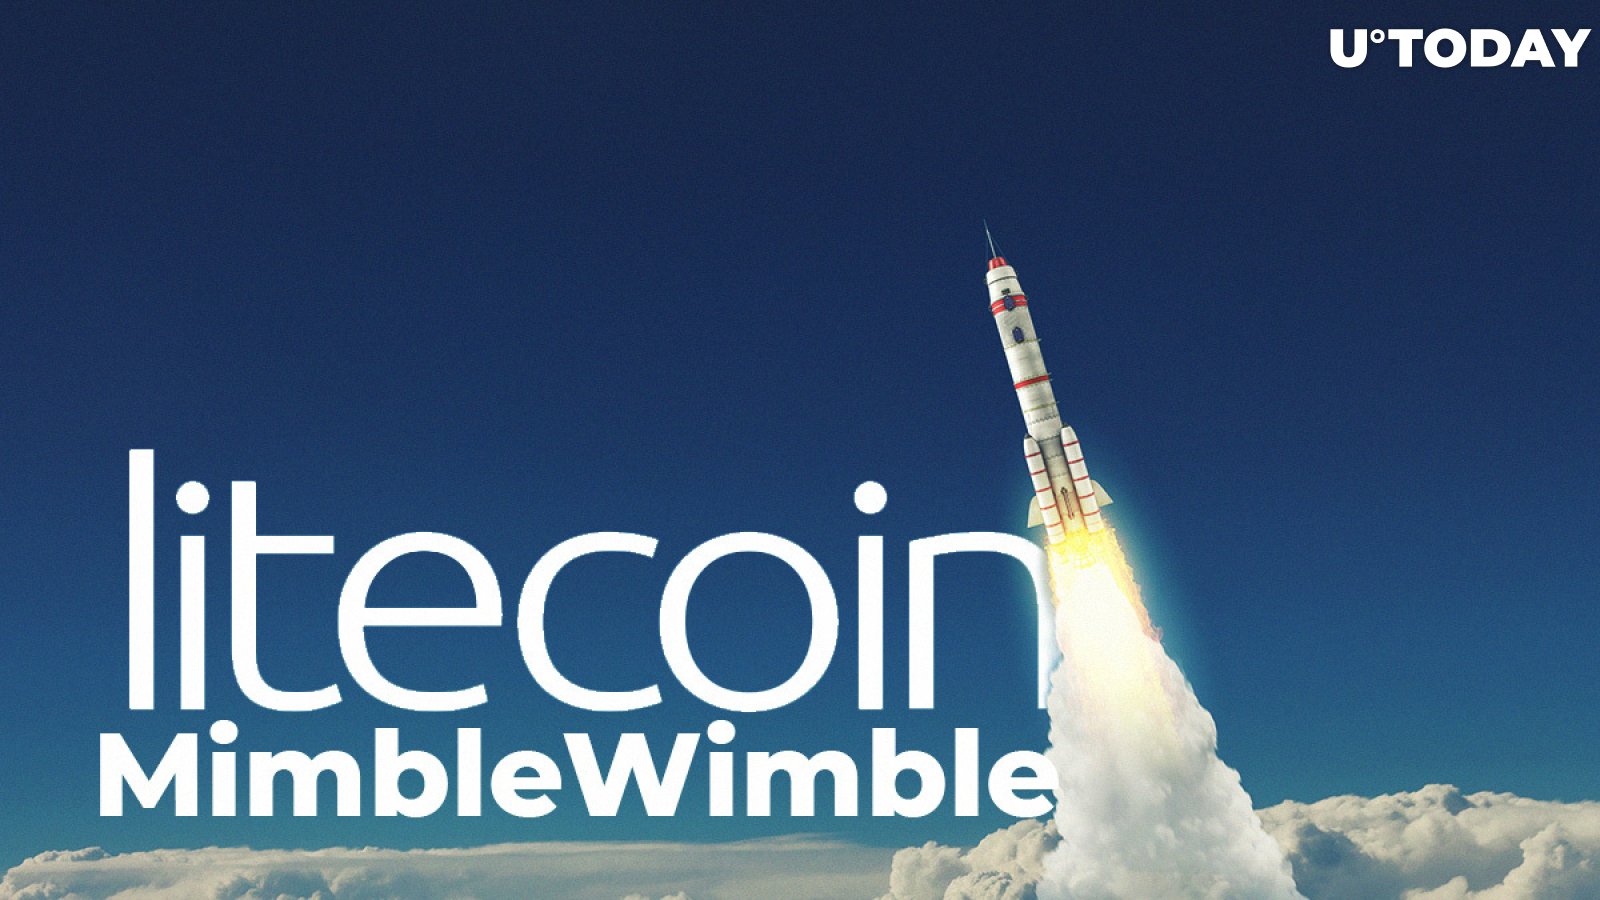 Litecoin's (LTC) MimbleWimble Progress Update: Testnet Date Announced